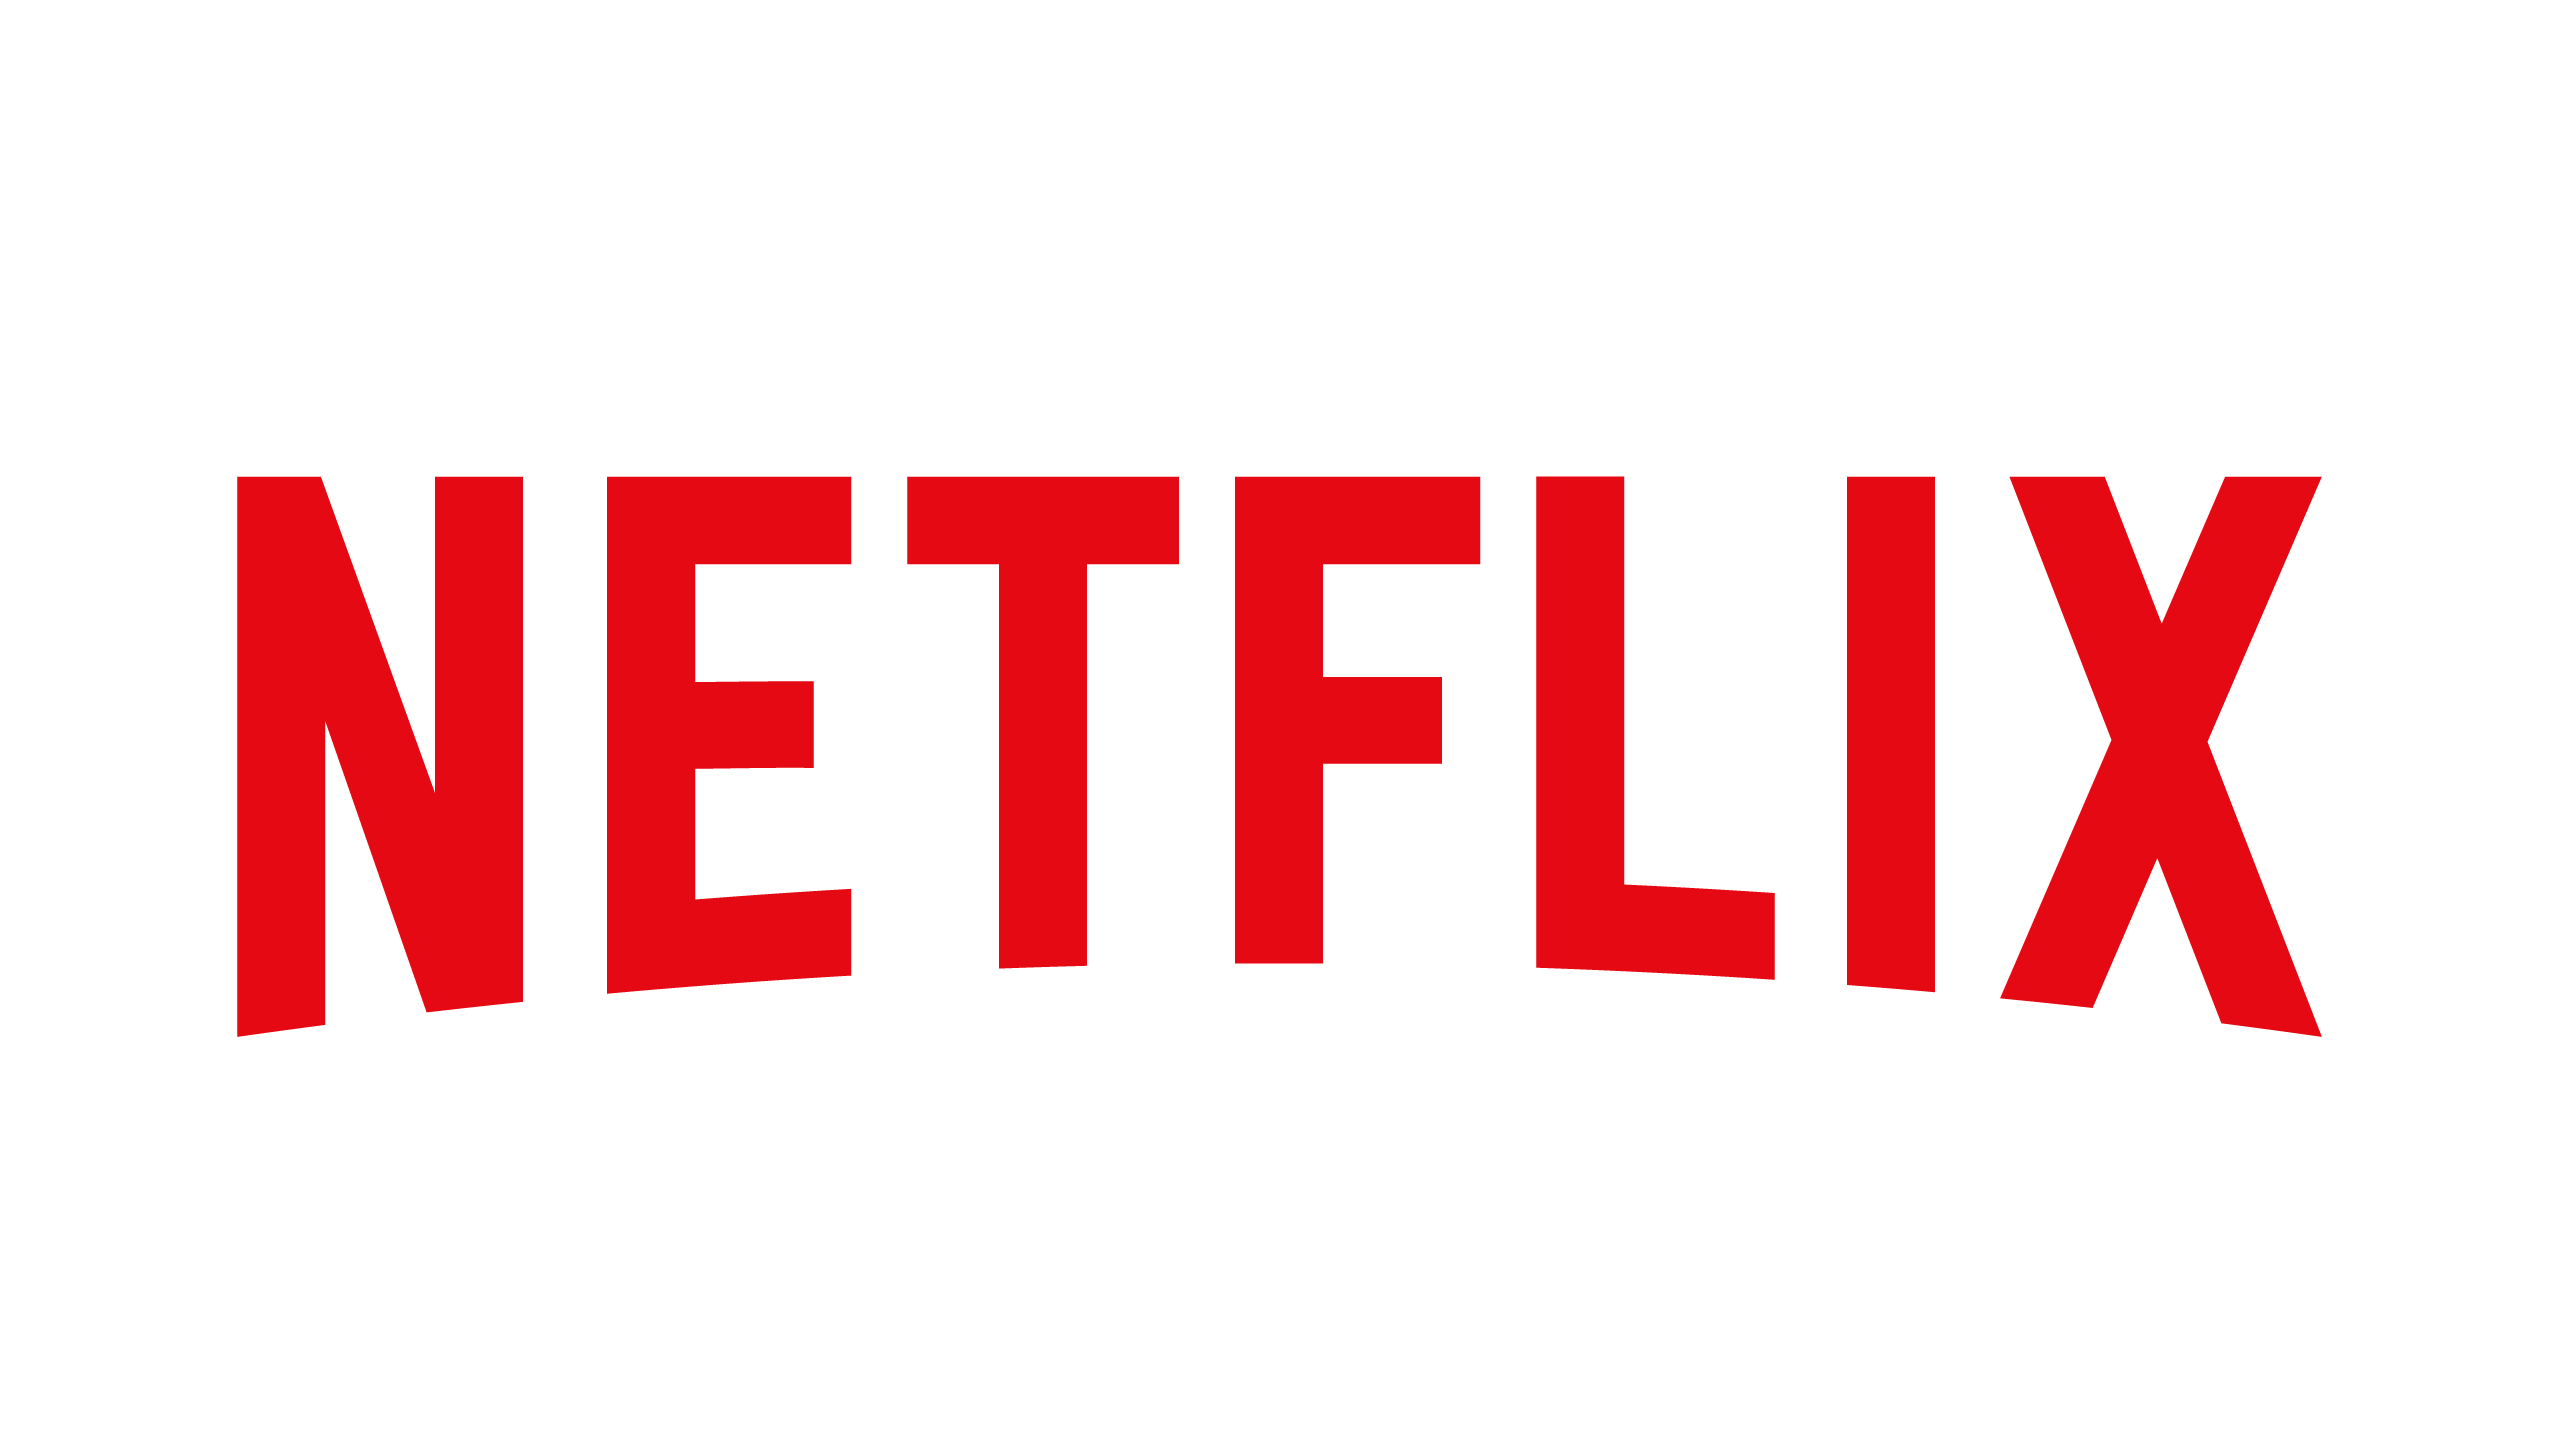 How to Get Free Netflix, Netflix Coupon, Netflix Deals, Netflix Promo Code, Free Netflix,